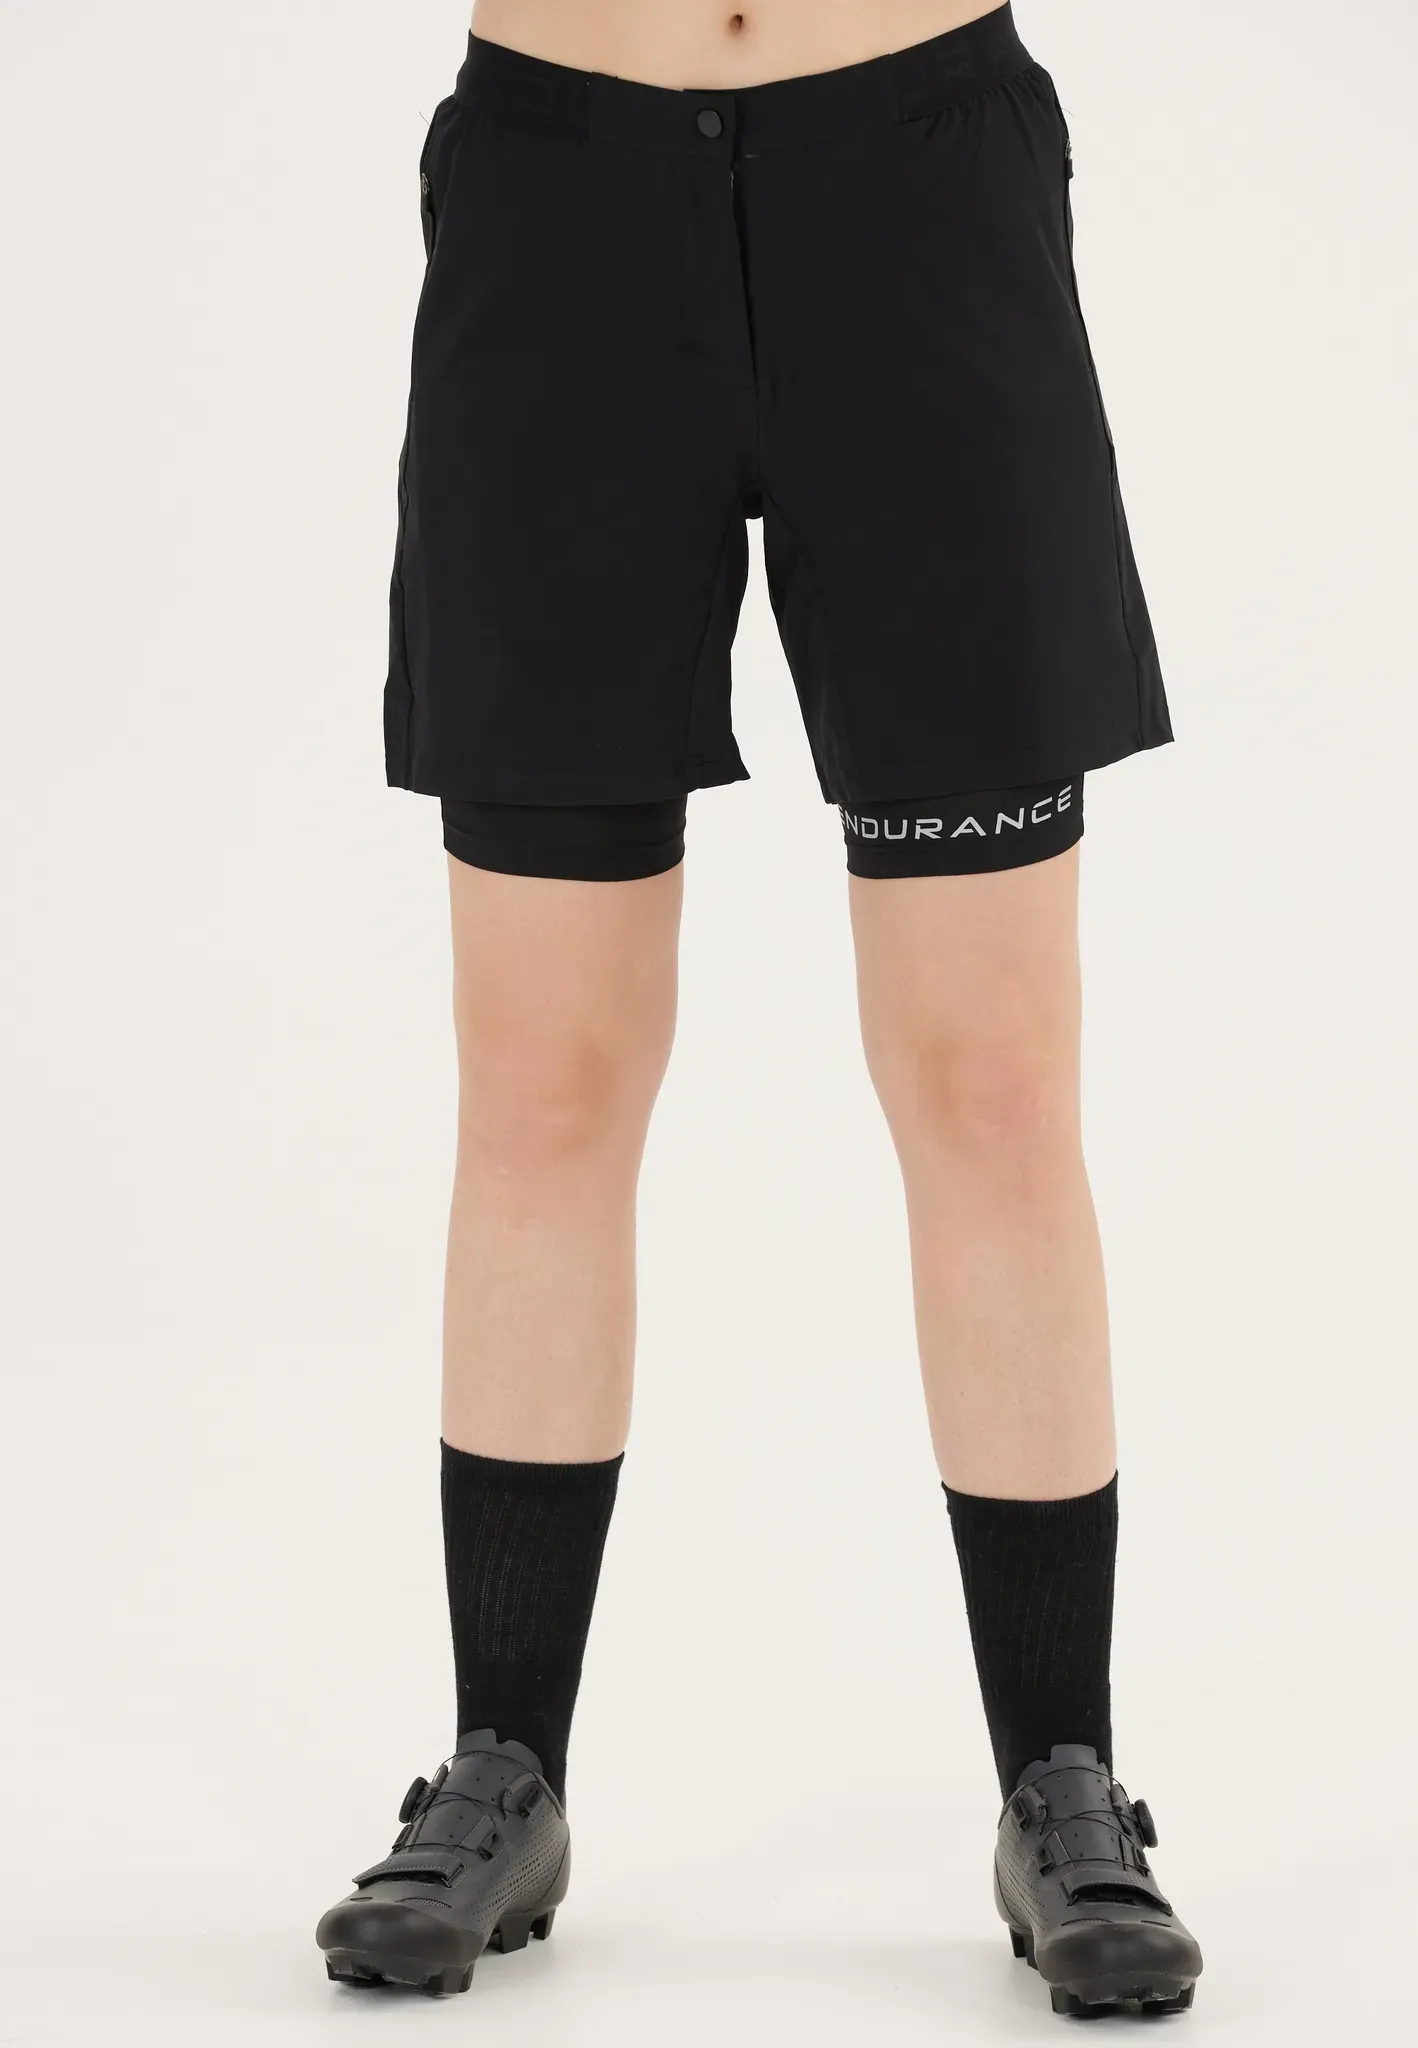 Radhose ENDURANCE "Macbeth" Gr. 42, EURO-Größen, schwarz Damen Hosen Sporthosen im schnelltrocknenden 2-in-1-Design